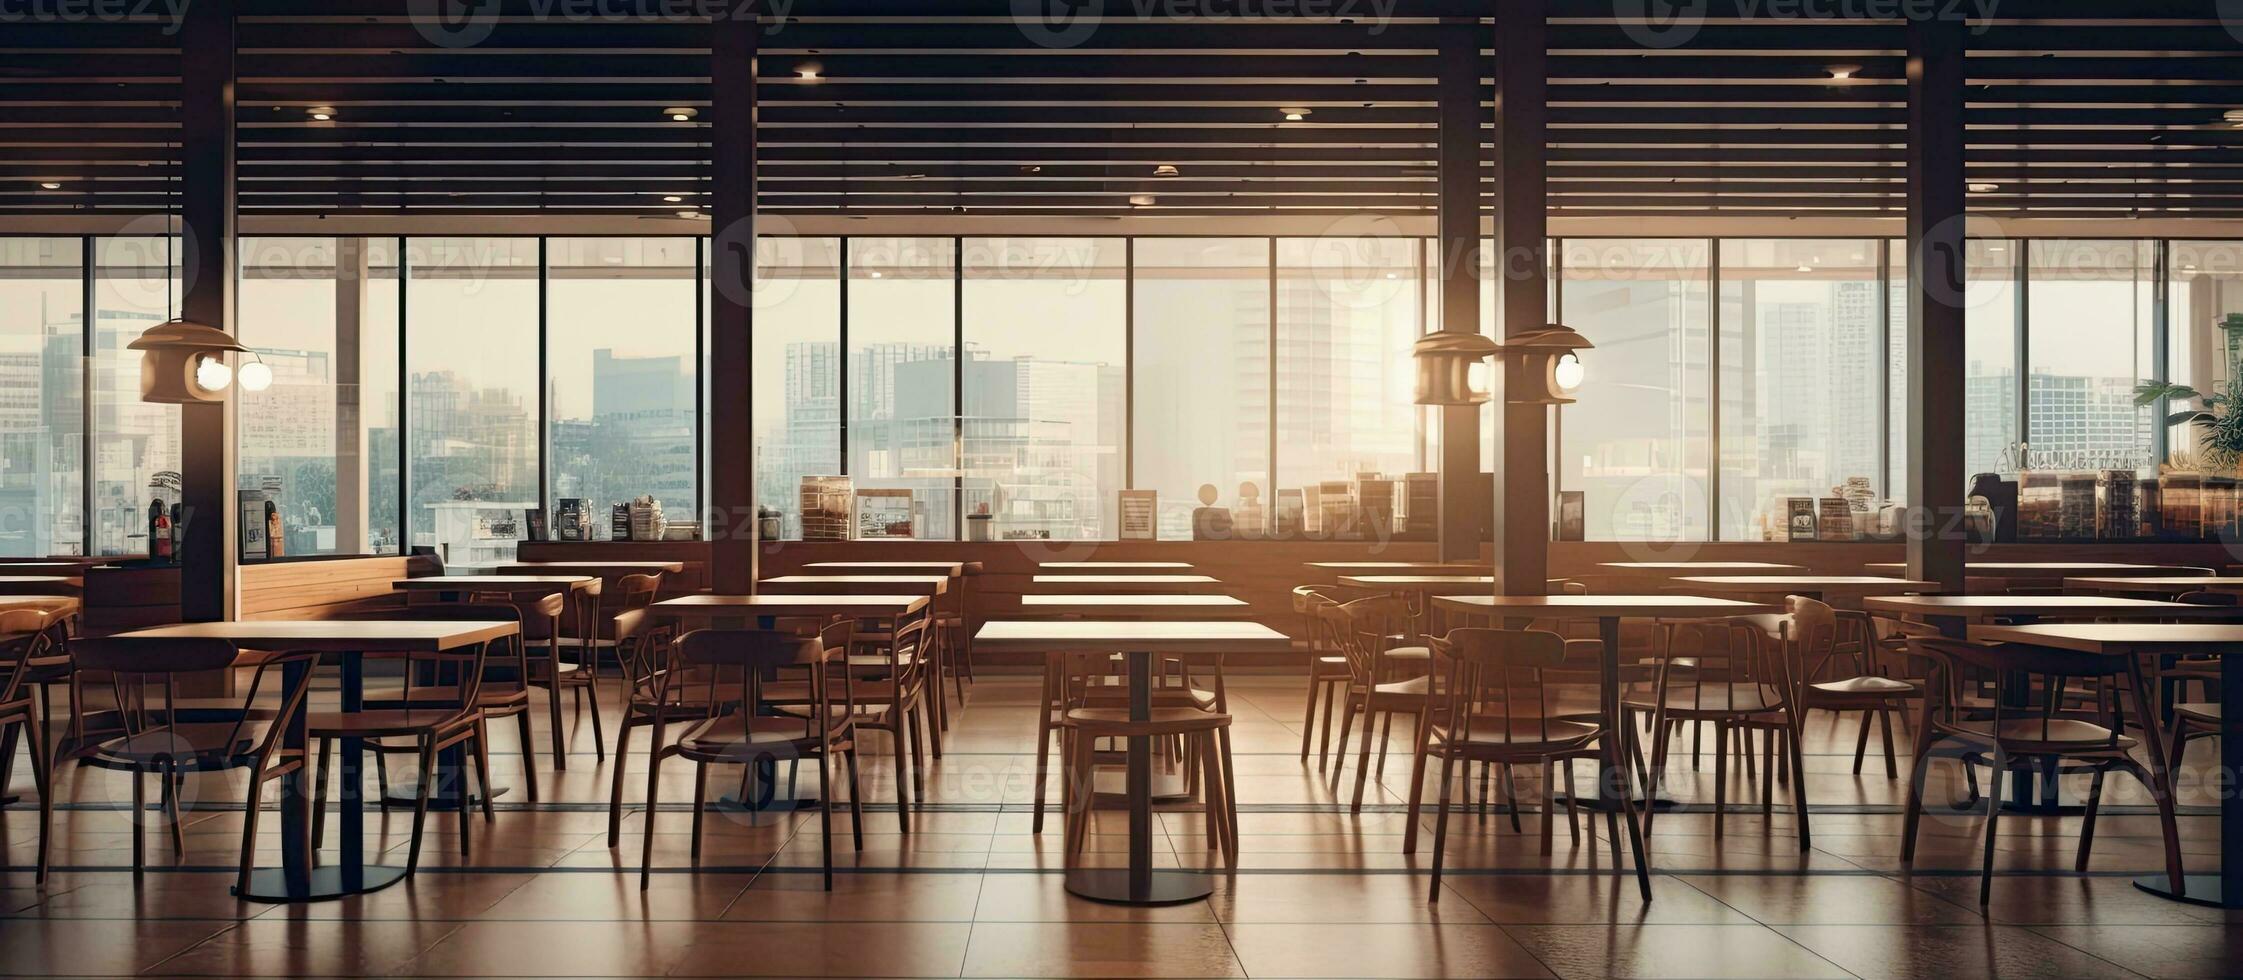 achtergrond beeld van leeg voedsel rechtbank interieur met houten tafels en warm knus licht instelling, foto